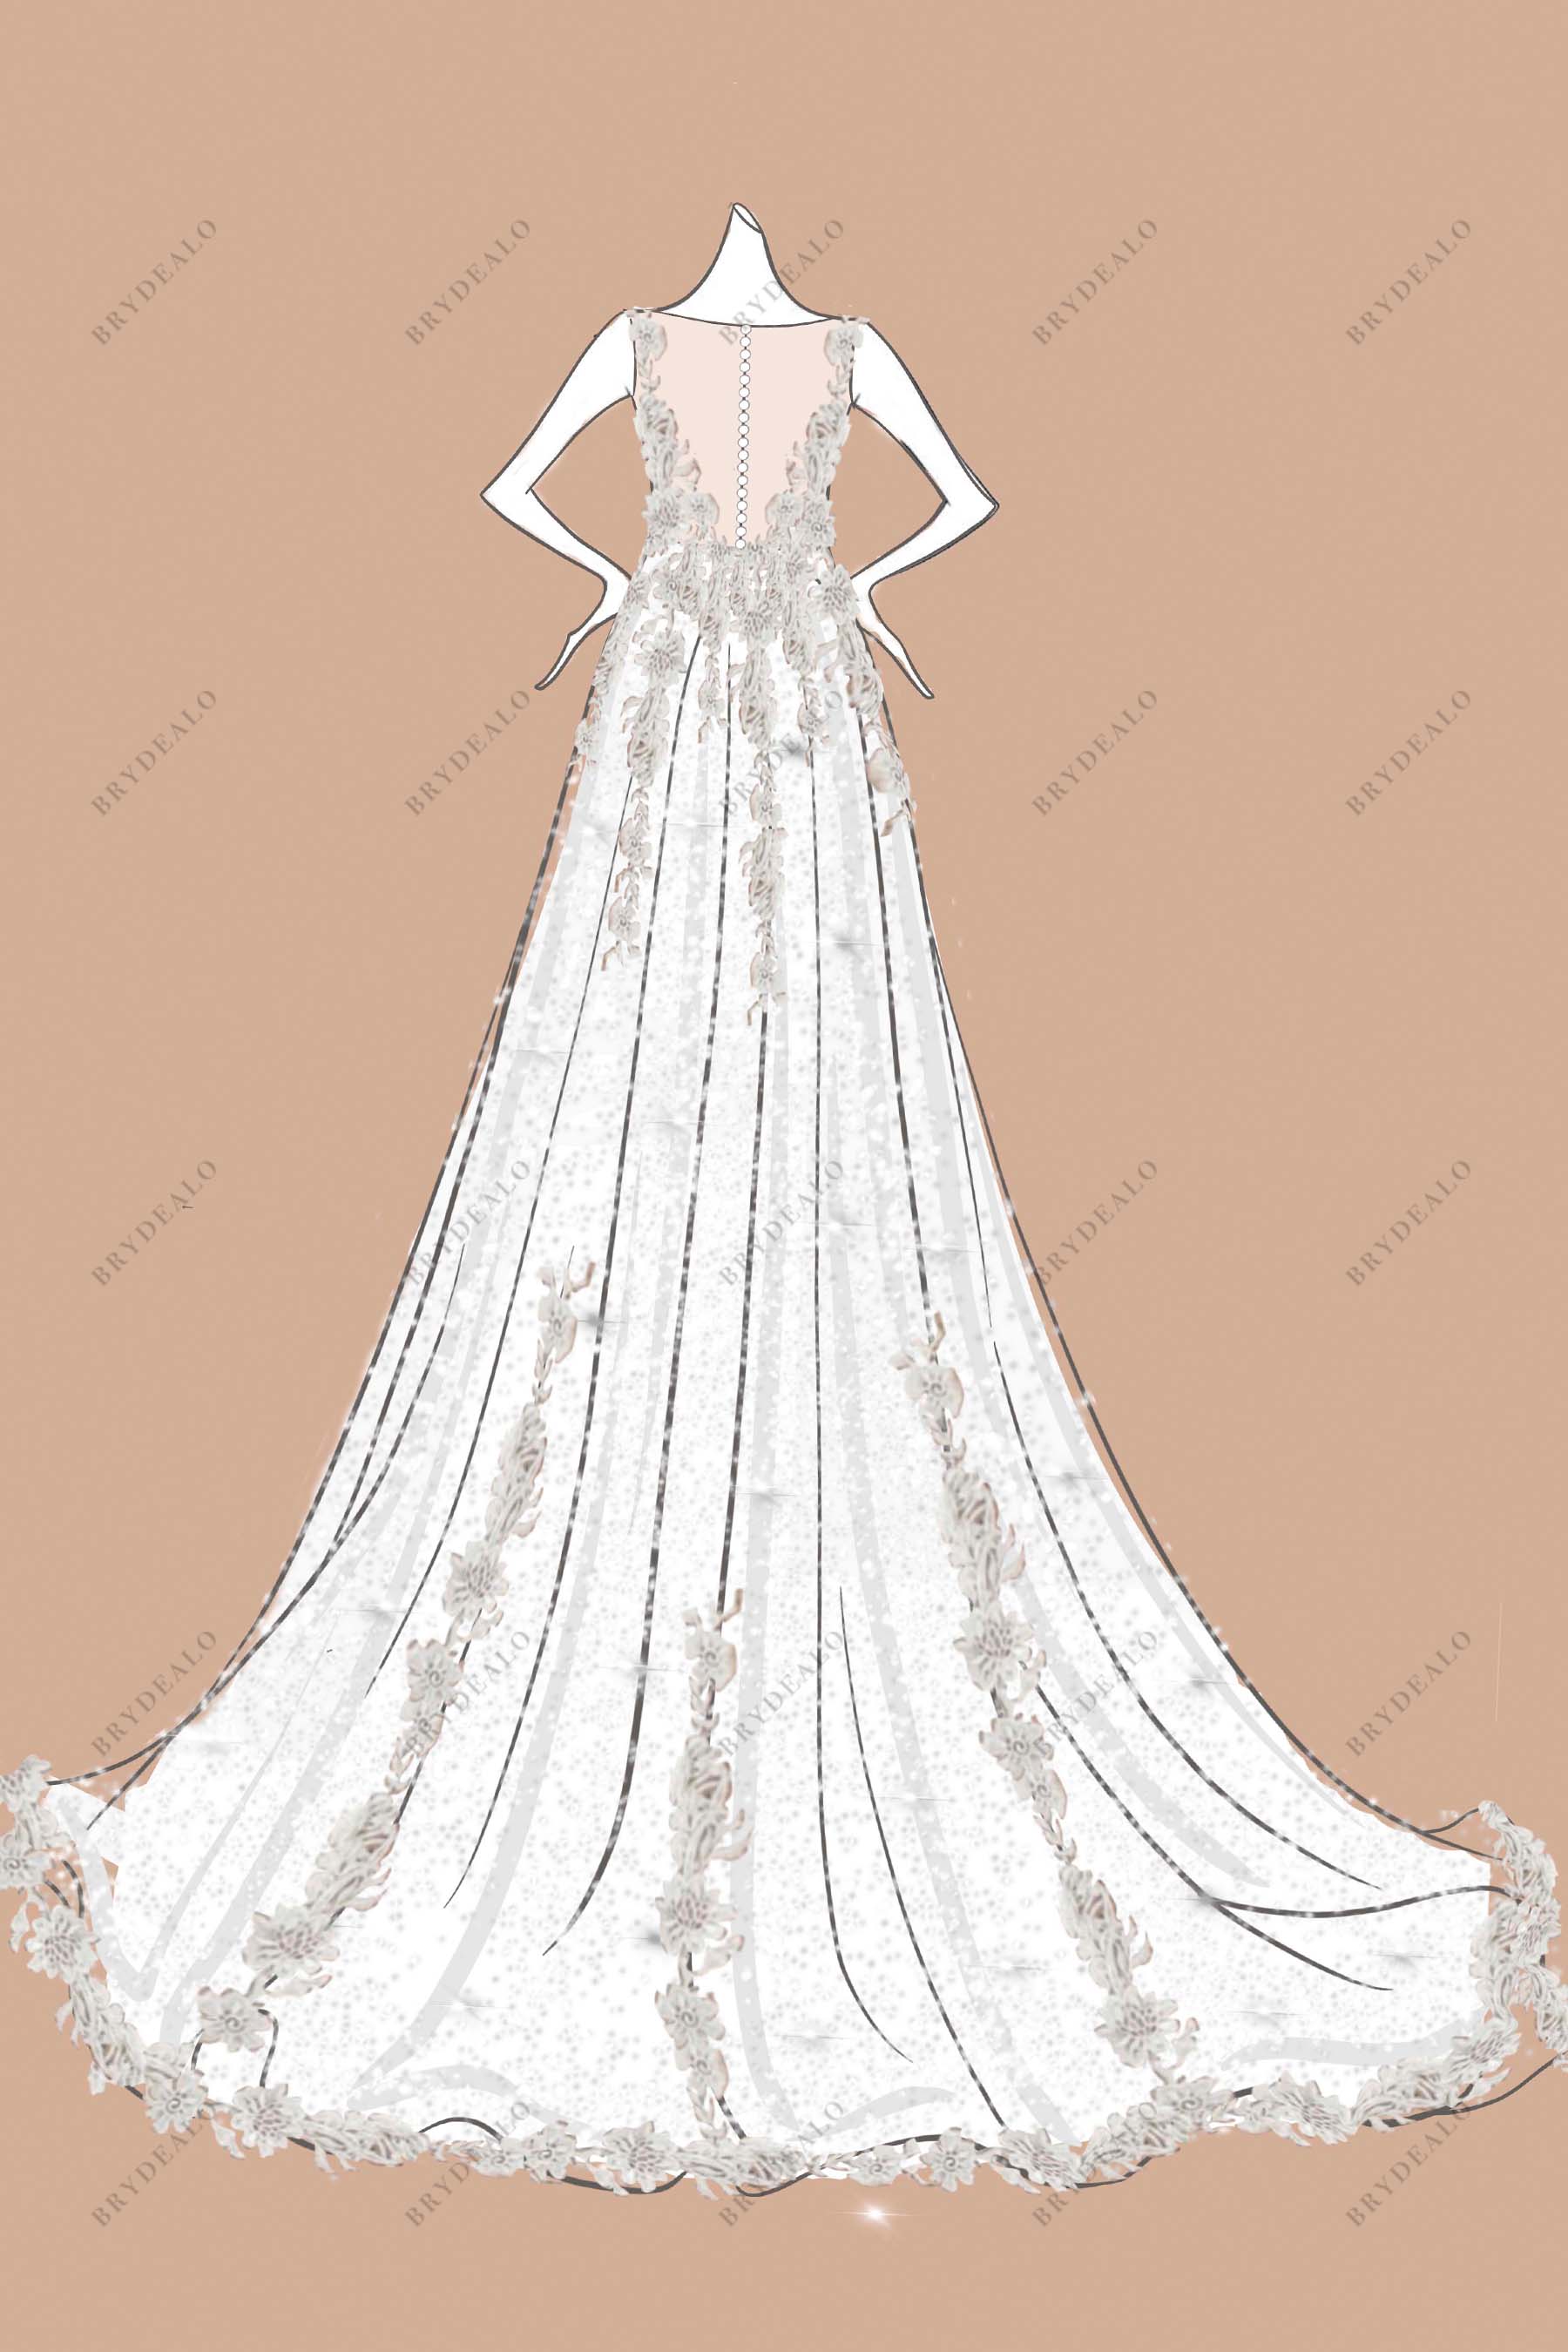 15427 Wedding Dress Sketch Images Stock Photos  Vectors  Shutterstock